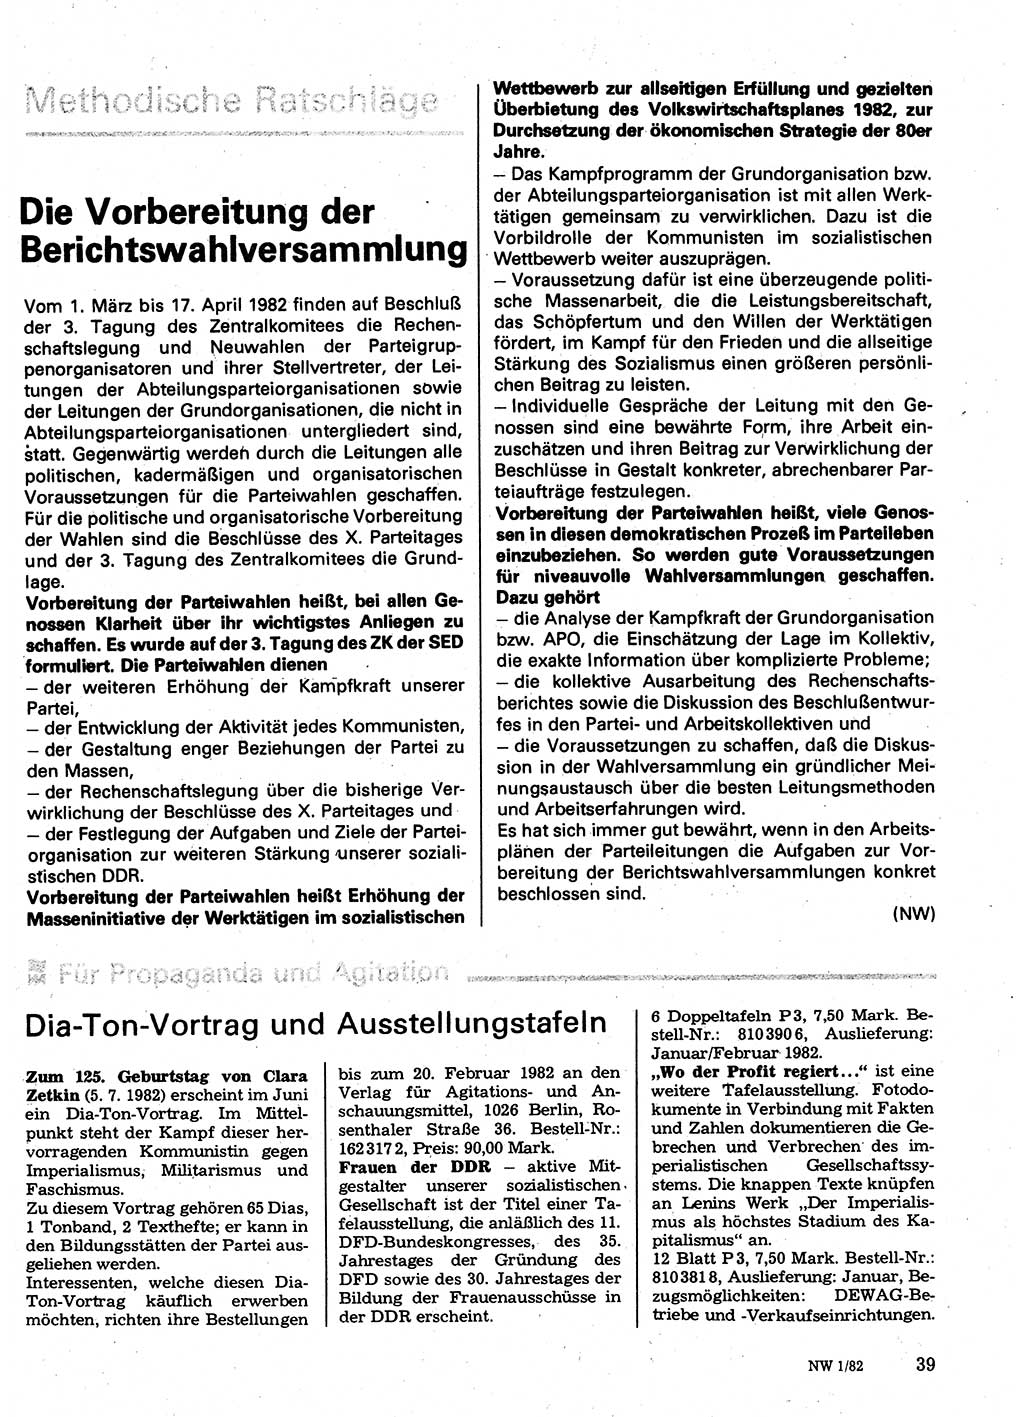 Neuer Weg (NW), Organ des Zentralkomitees (ZK) der SED (Sozialistische Einheitspartei Deutschlands) für Fragen des Parteilebens, 37. Jahrgang [Deutsche Demokratische Republik (DDR)] 1982, Seite 39 (NW ZK SED DDR 1982, S. 39)